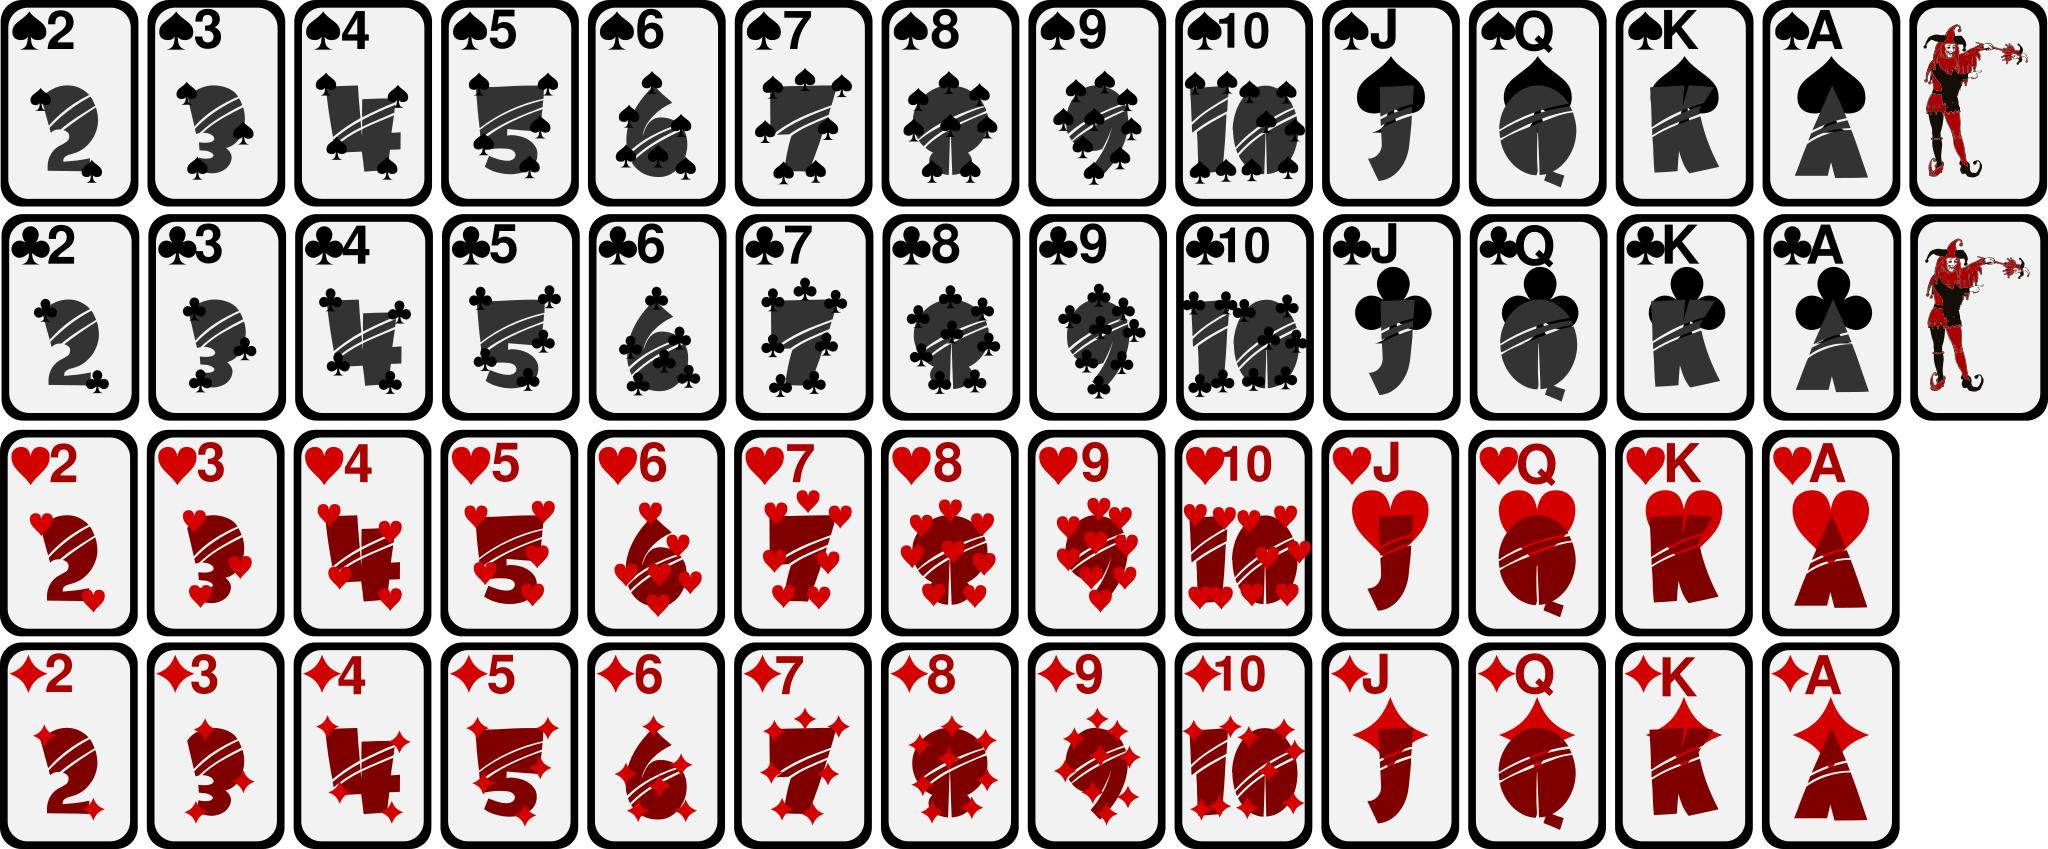 Покер колода 52 карты